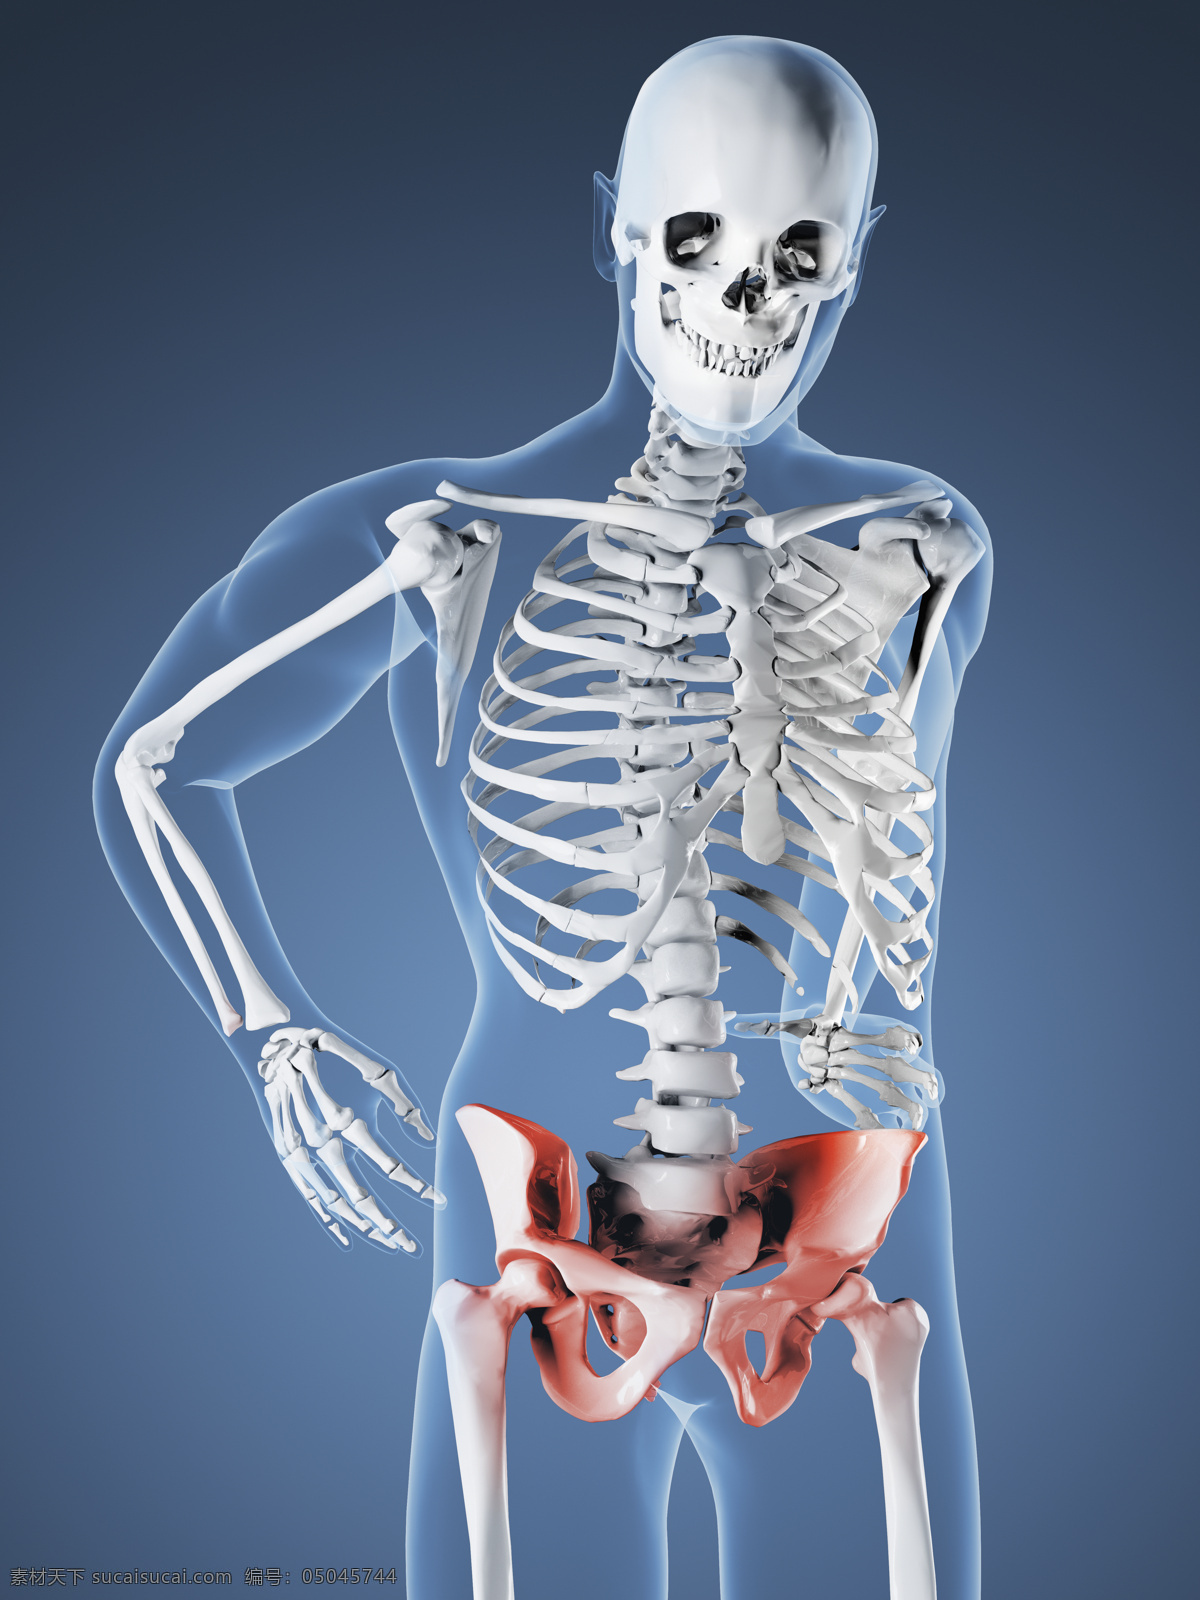 人体骨骼研究 唯美 炫酷 人体 骨骼 骨头 透视 研究 科学 科研 解剖学 人体学 疼痛 现代科技 科学研究